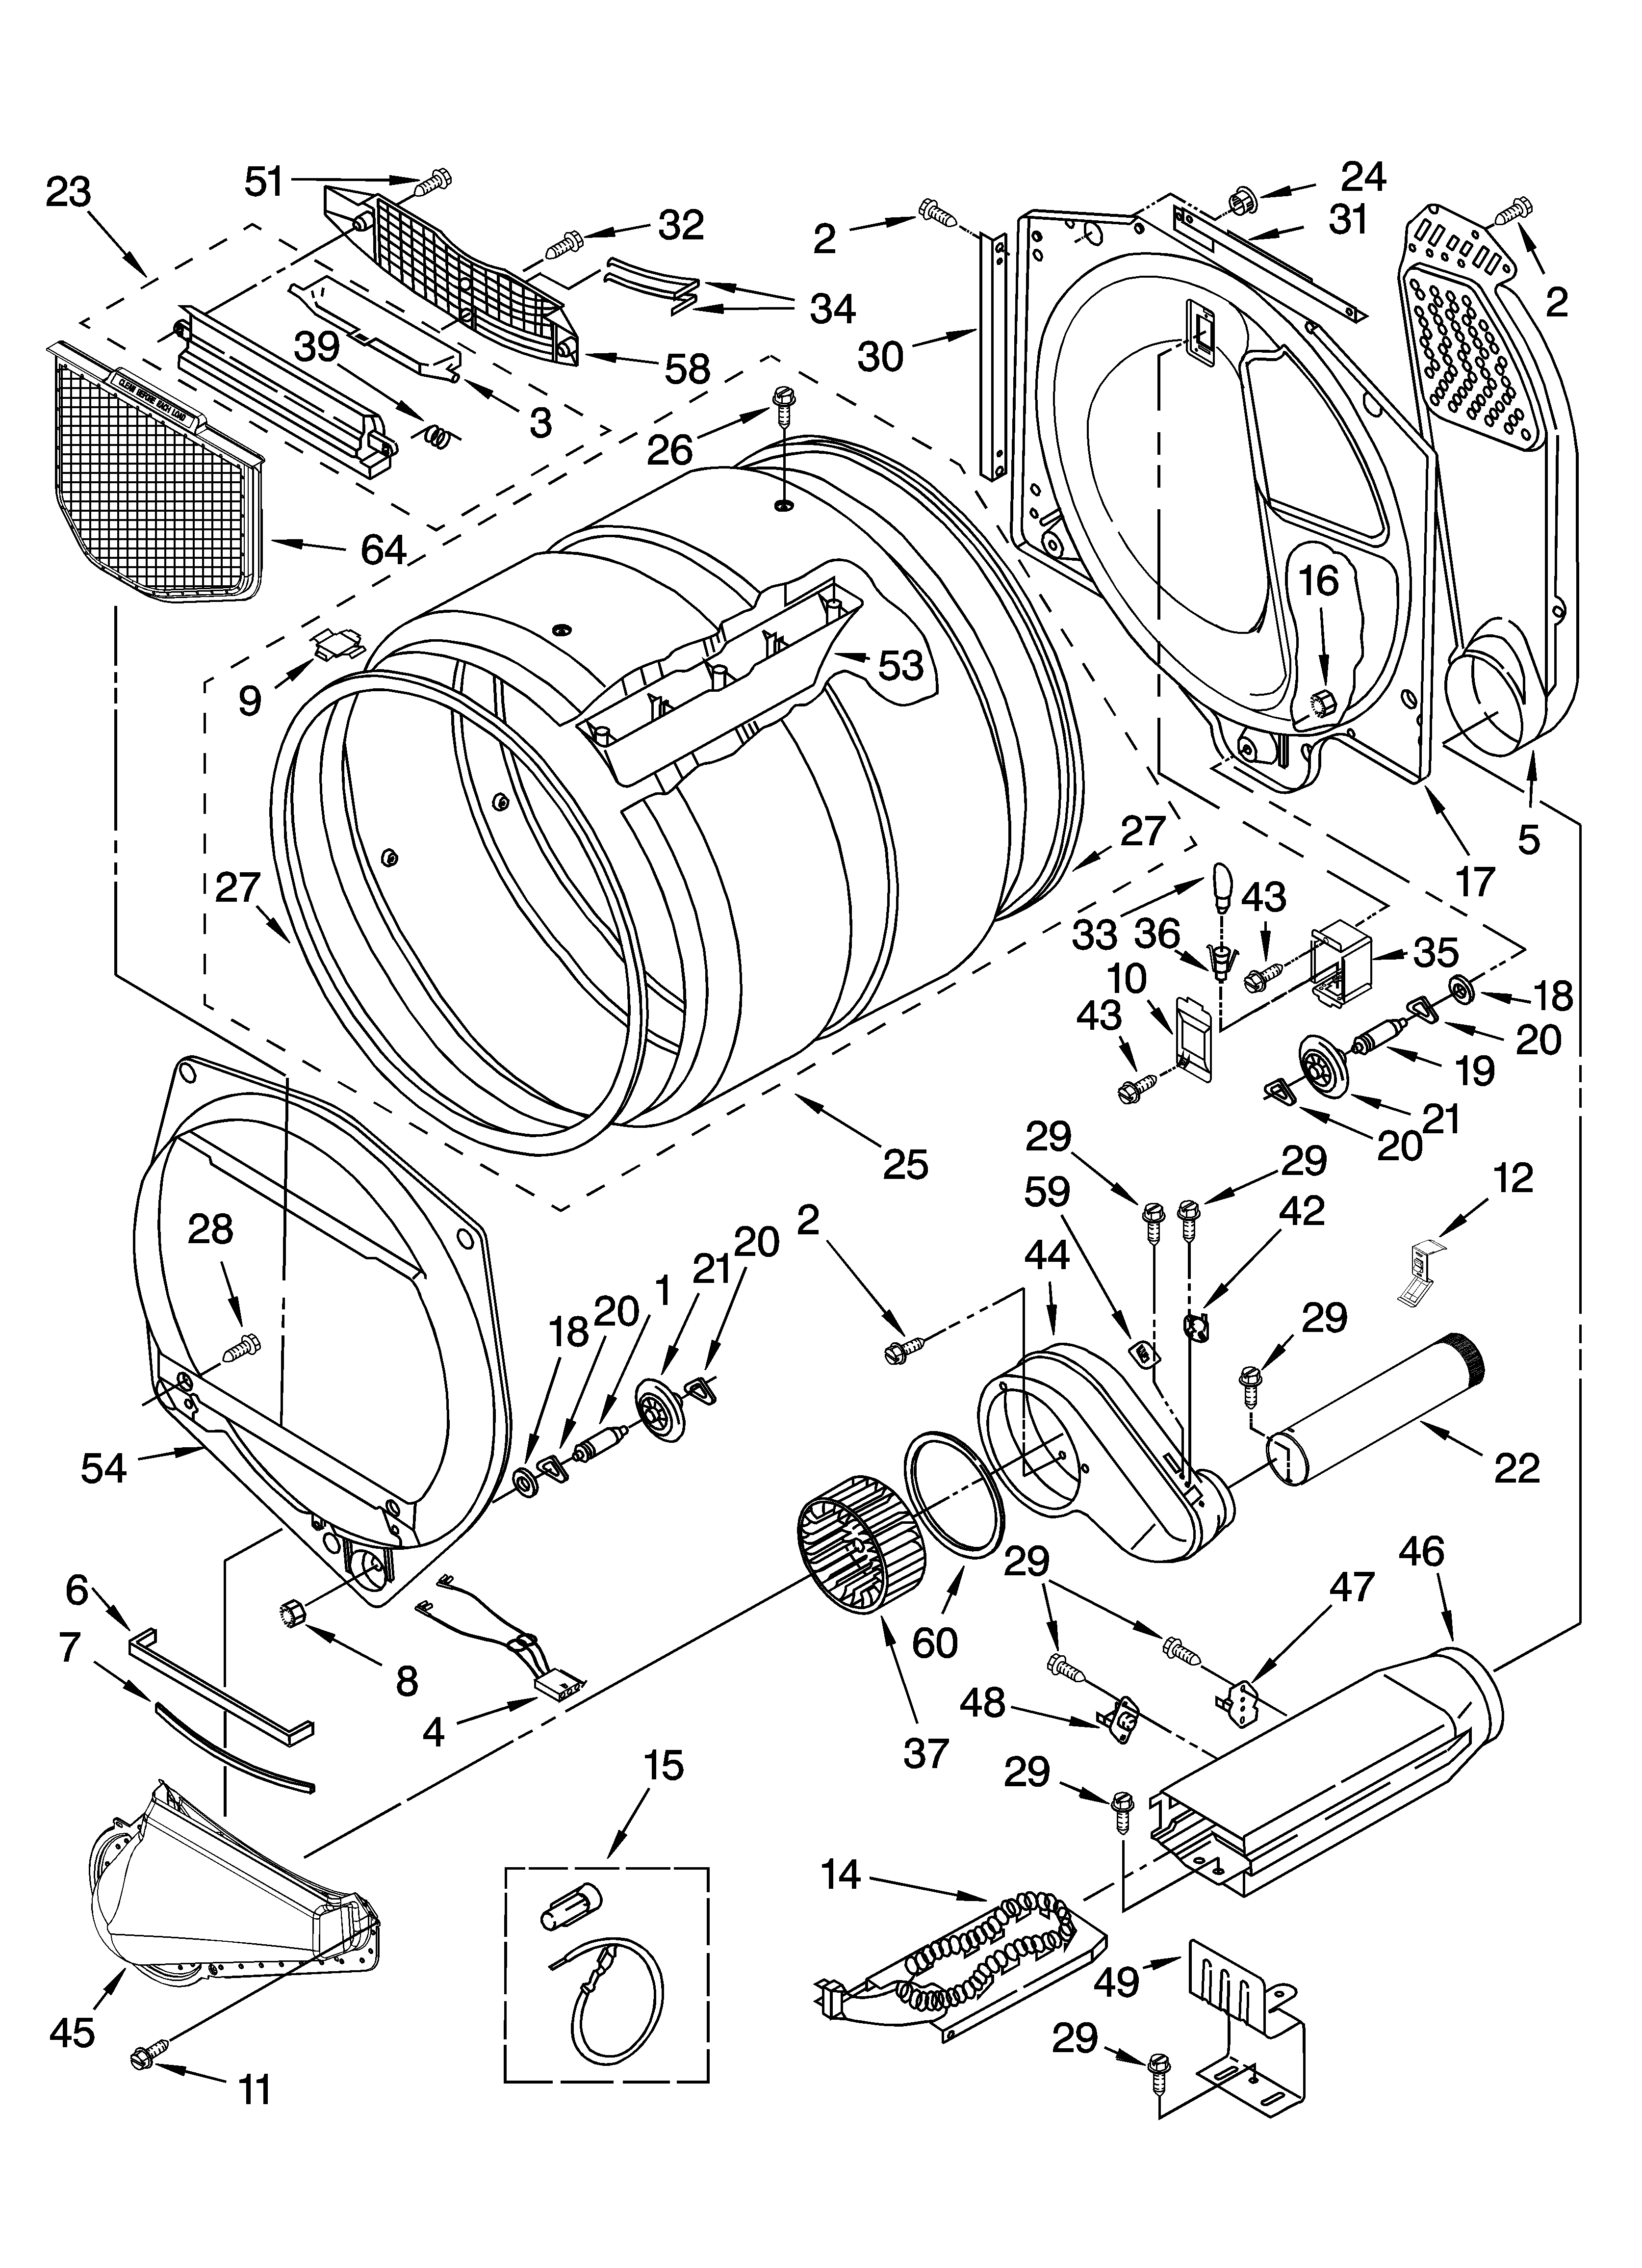 Maytag Dryer Heating Element Wiring Diagram - Wiring Diagram Schemas